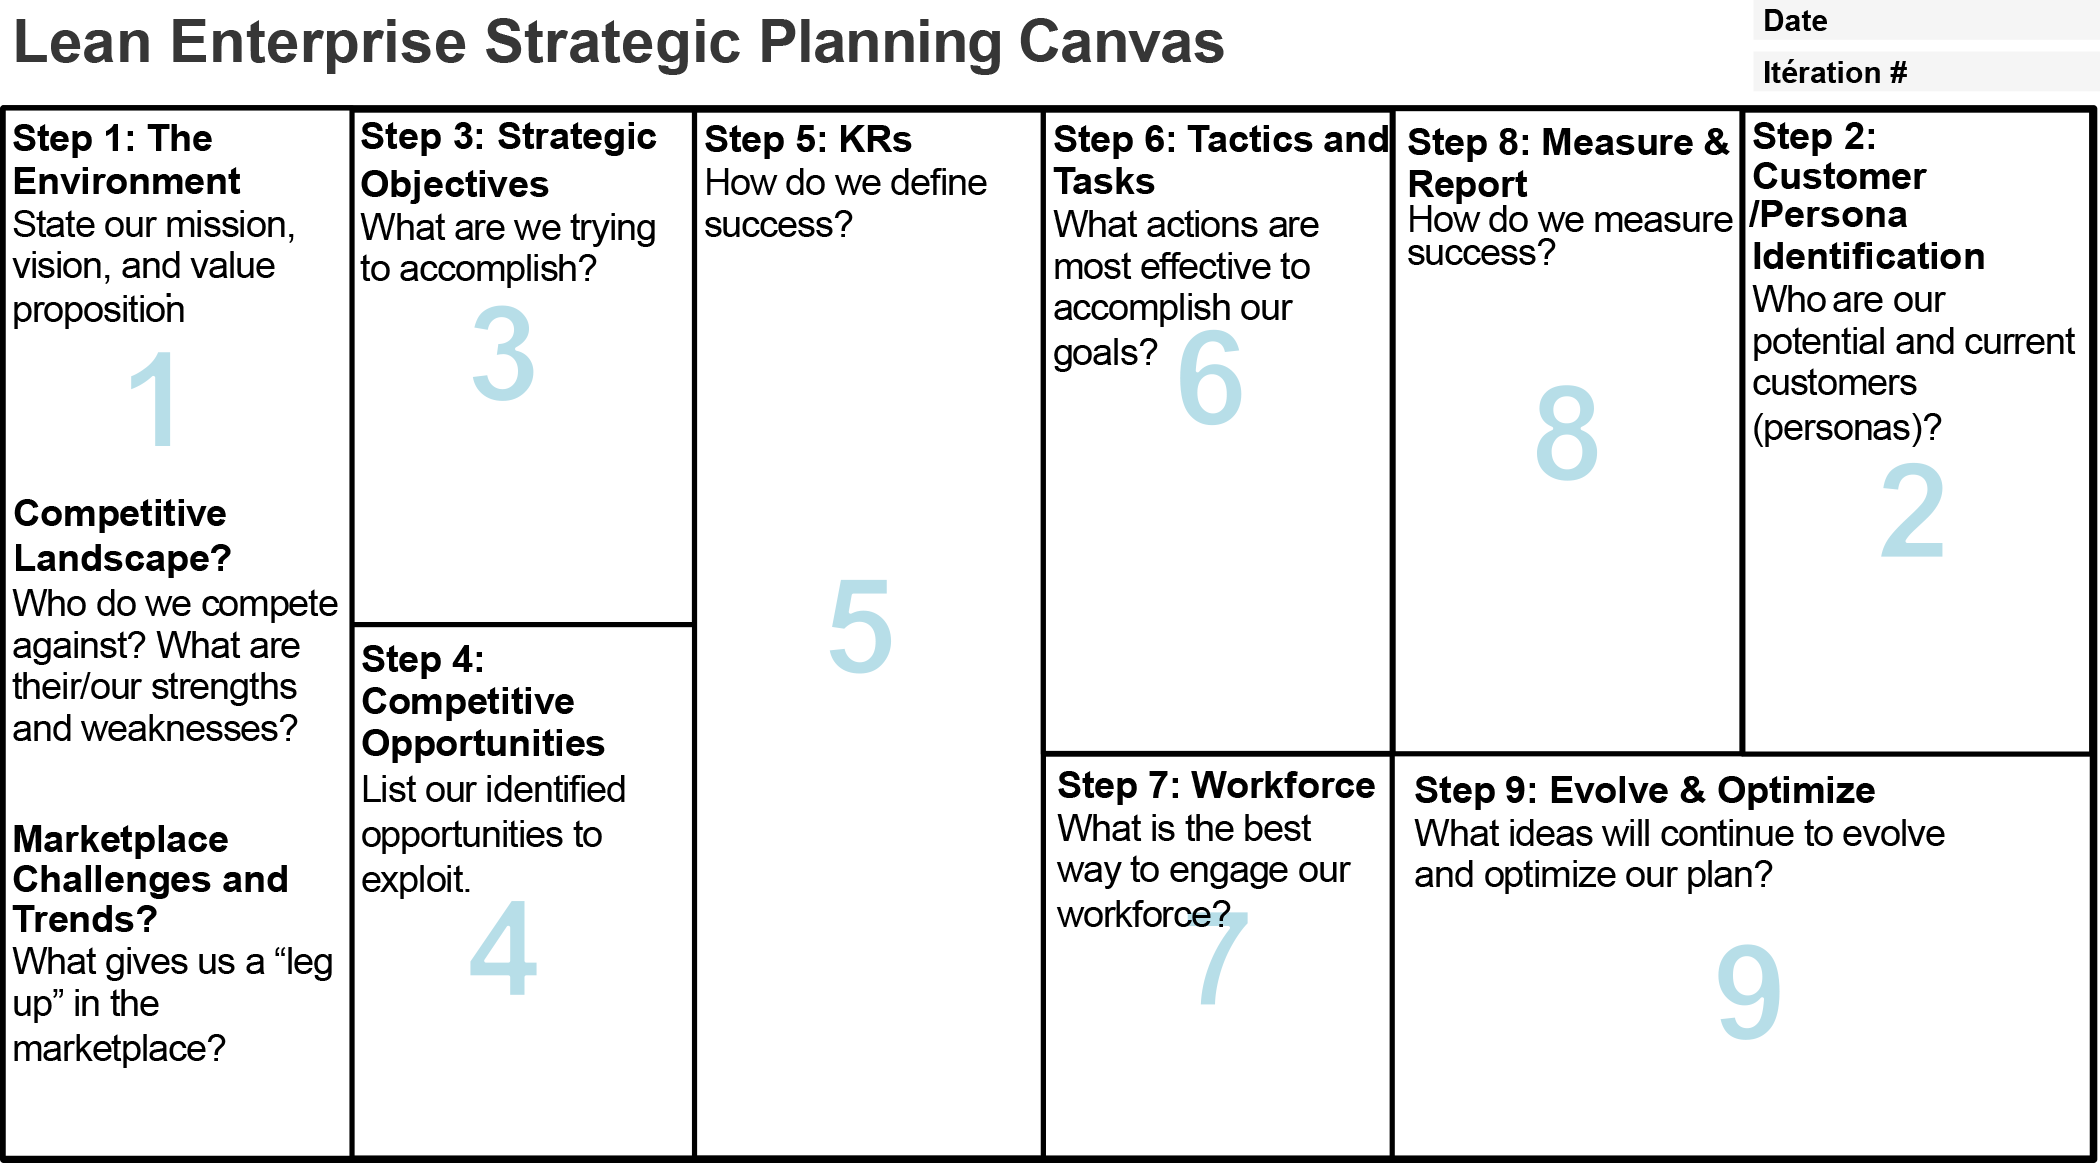 Lean enterprise strategic planning canvas.